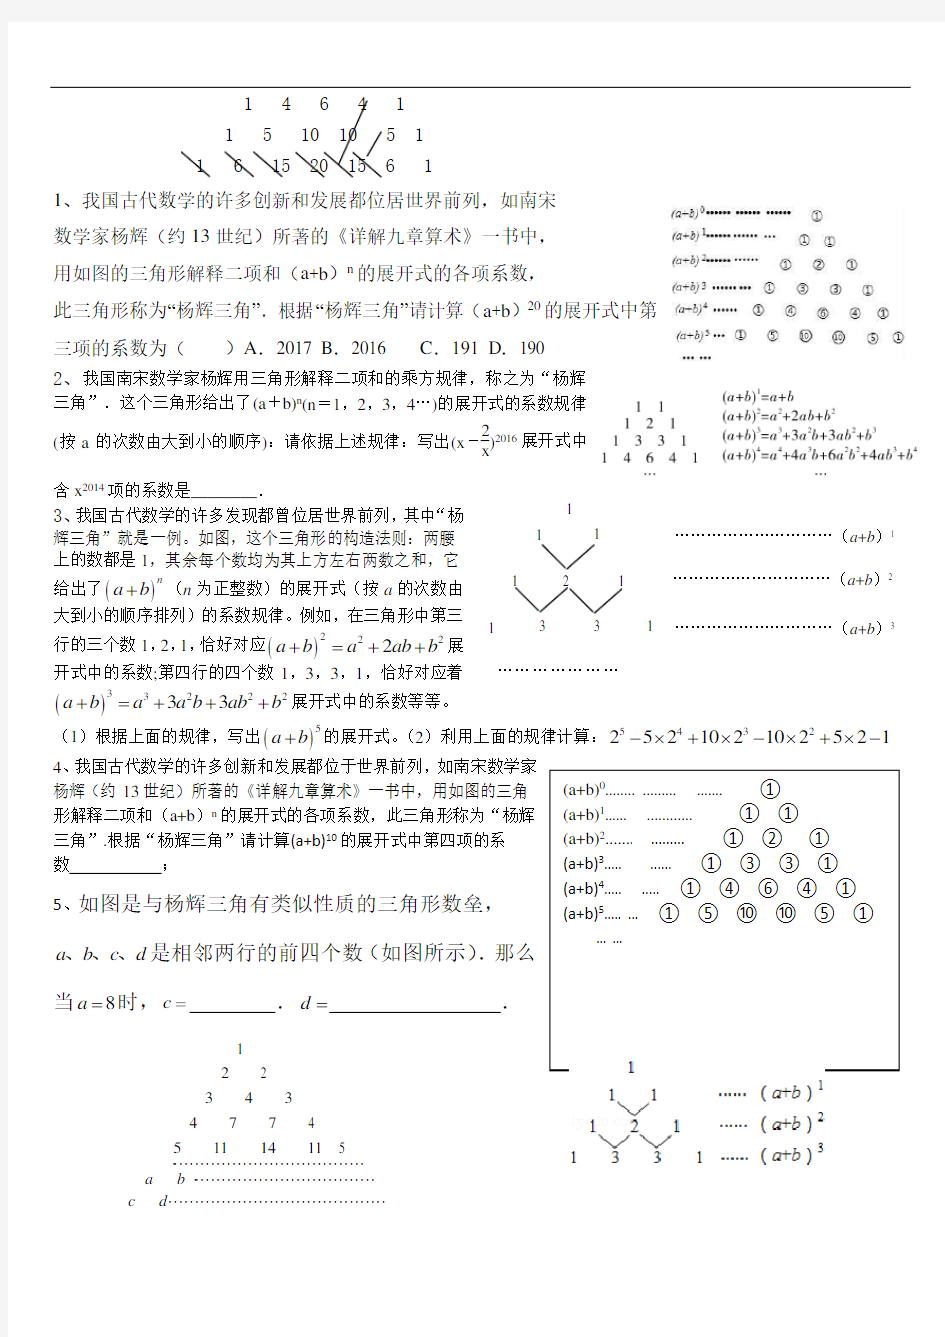 杨辉三角与中考数学